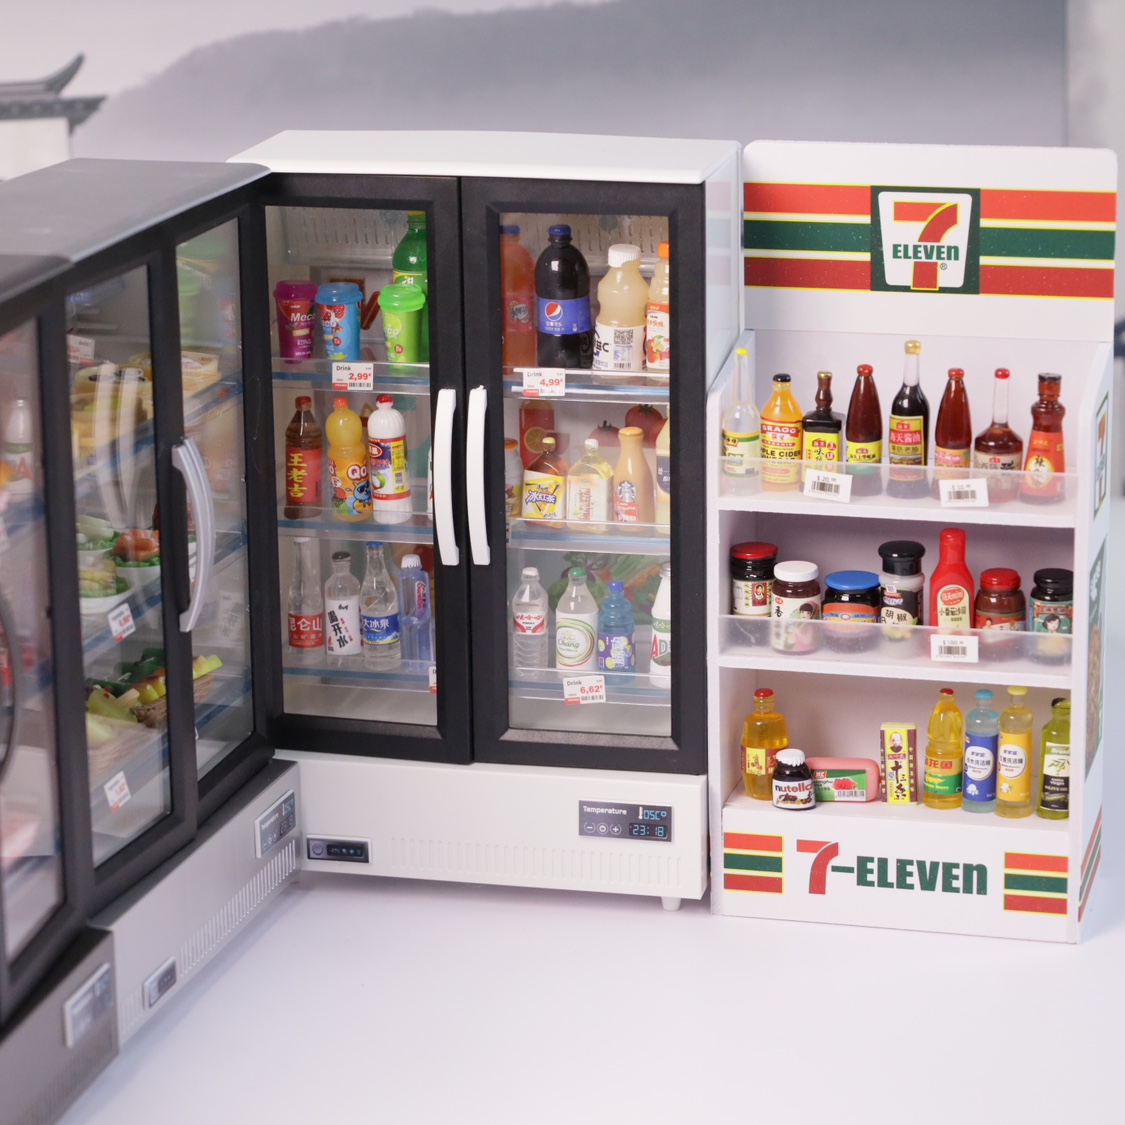 迷你儿童微缩玩具仿真小物品瓶子双开门大冰箱便利店食物模型食玩